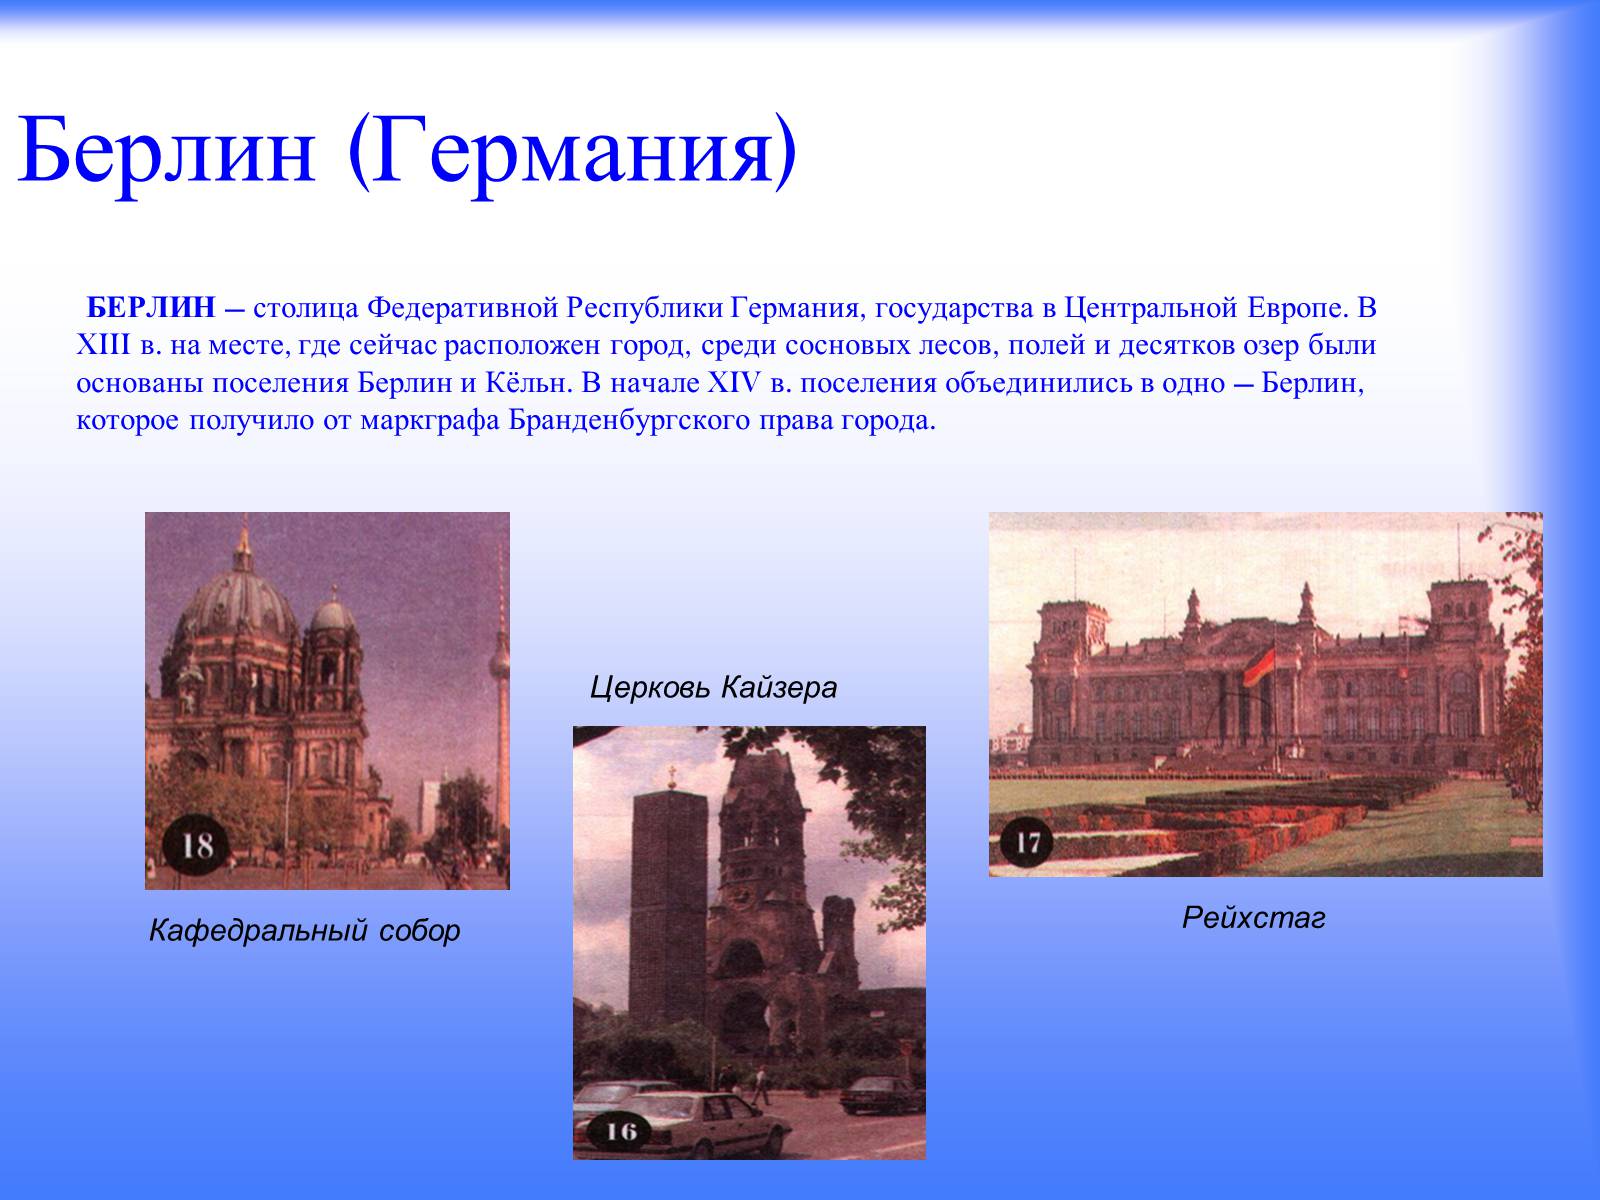 Достопримечательности берлина фото с названиями и описанием на русском языке